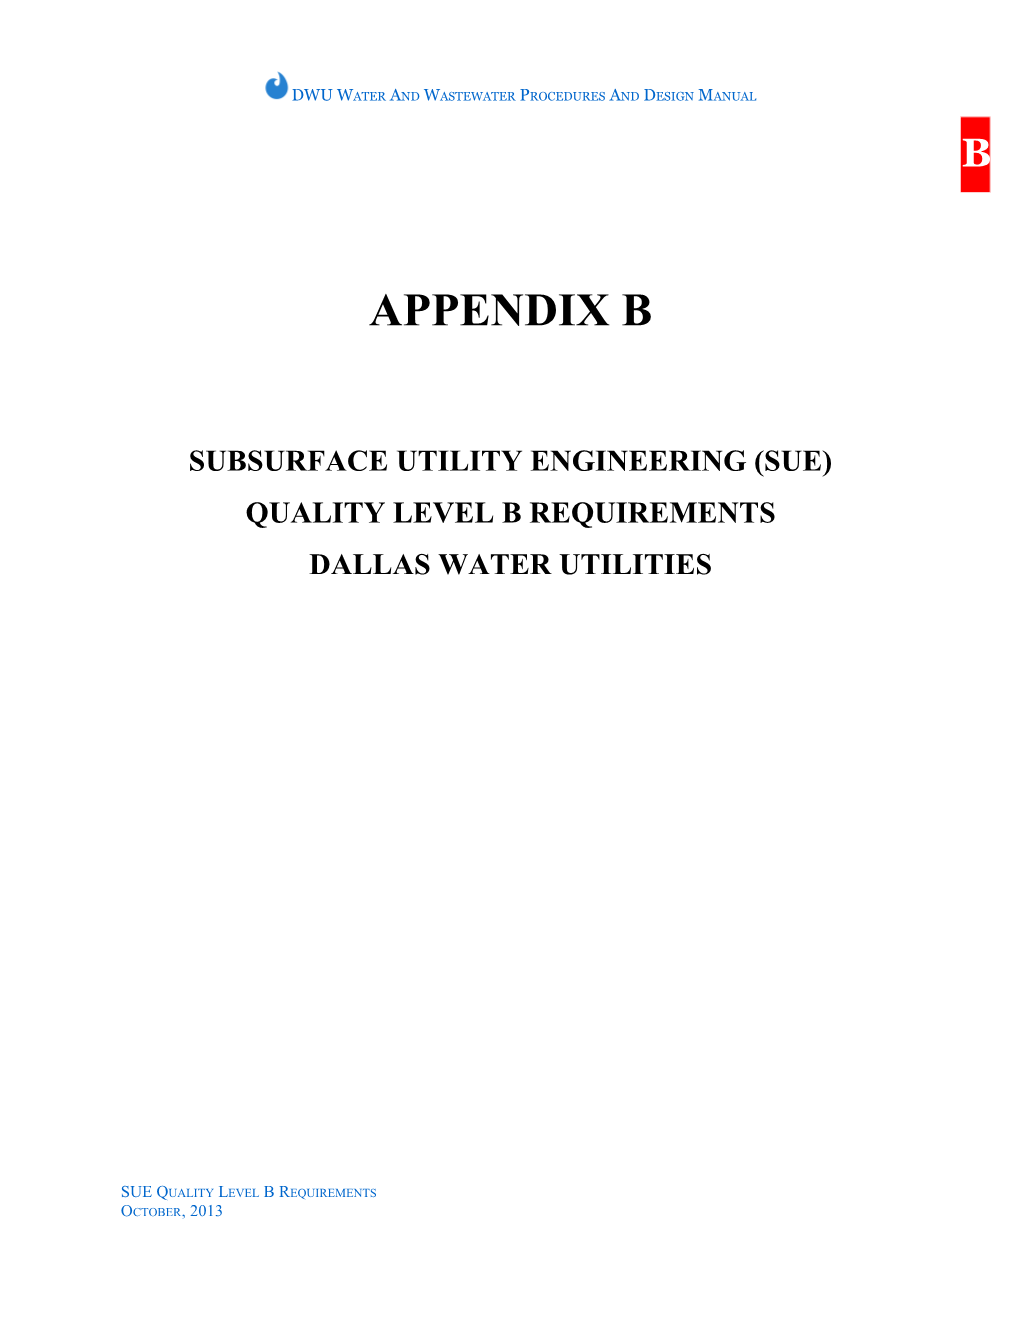 APPENDIX A: SUE Level B